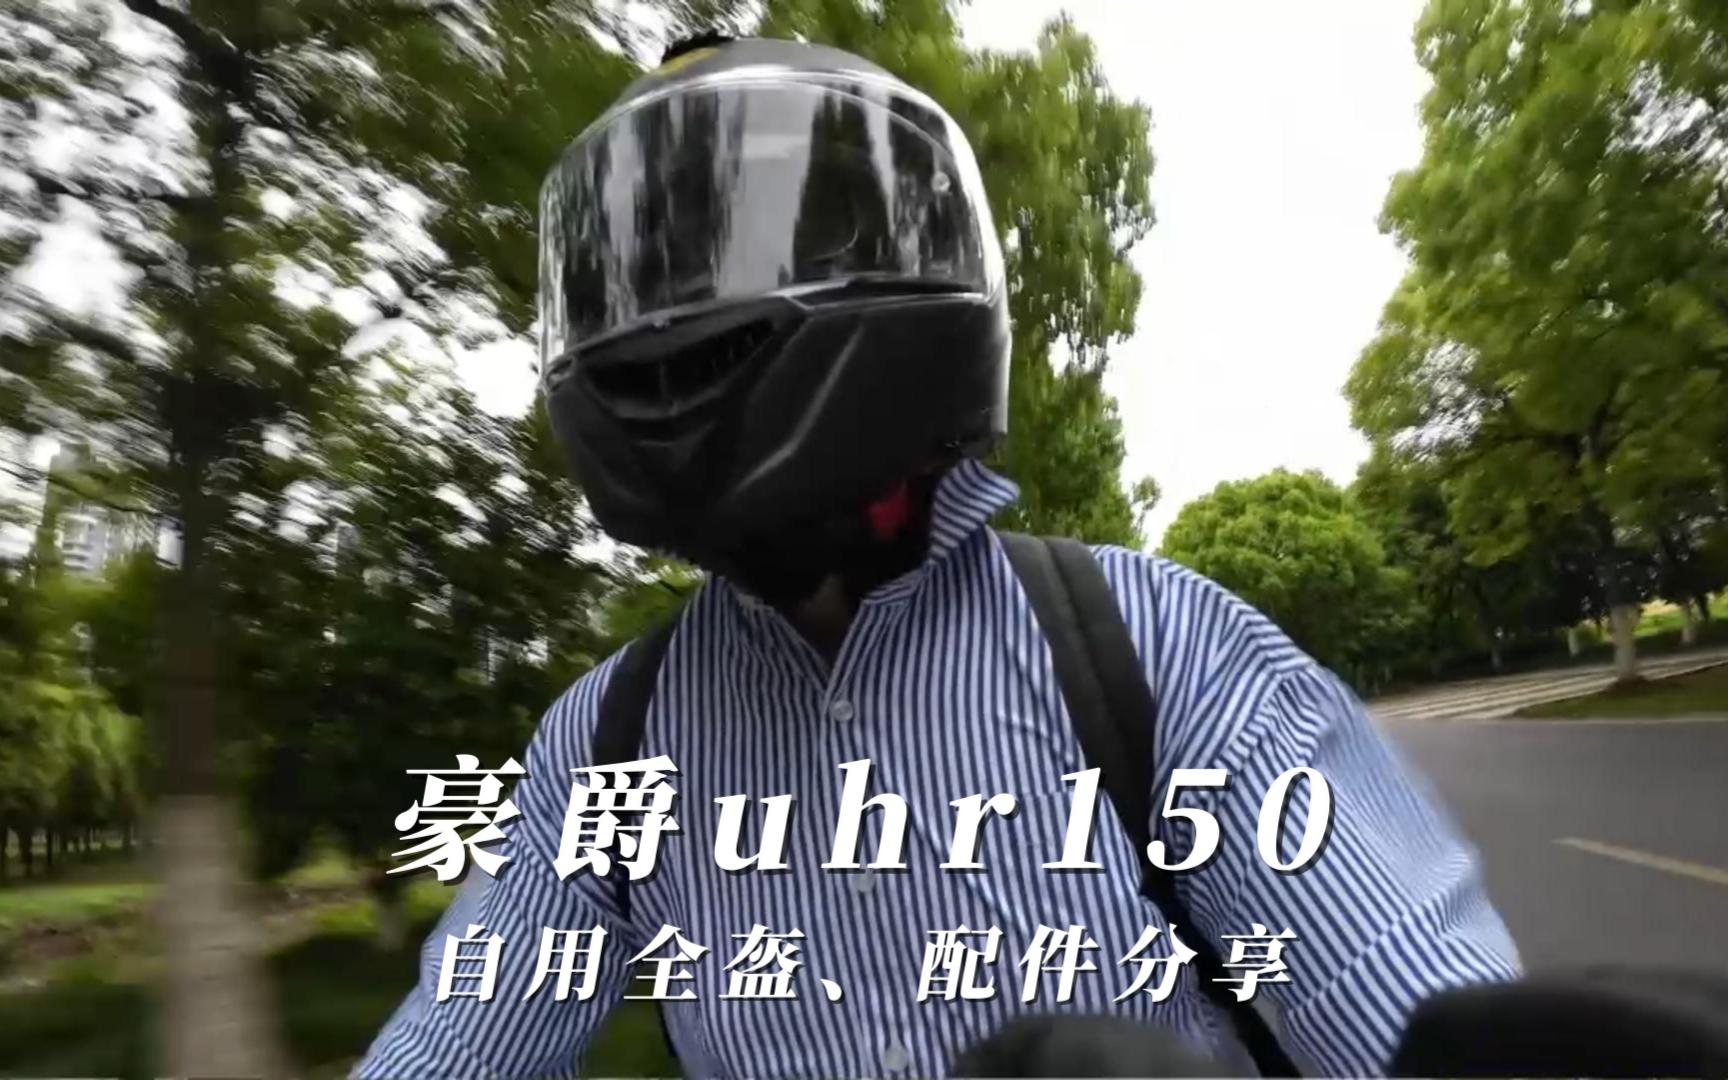 豪爵UHR150自用全盔、配件分享